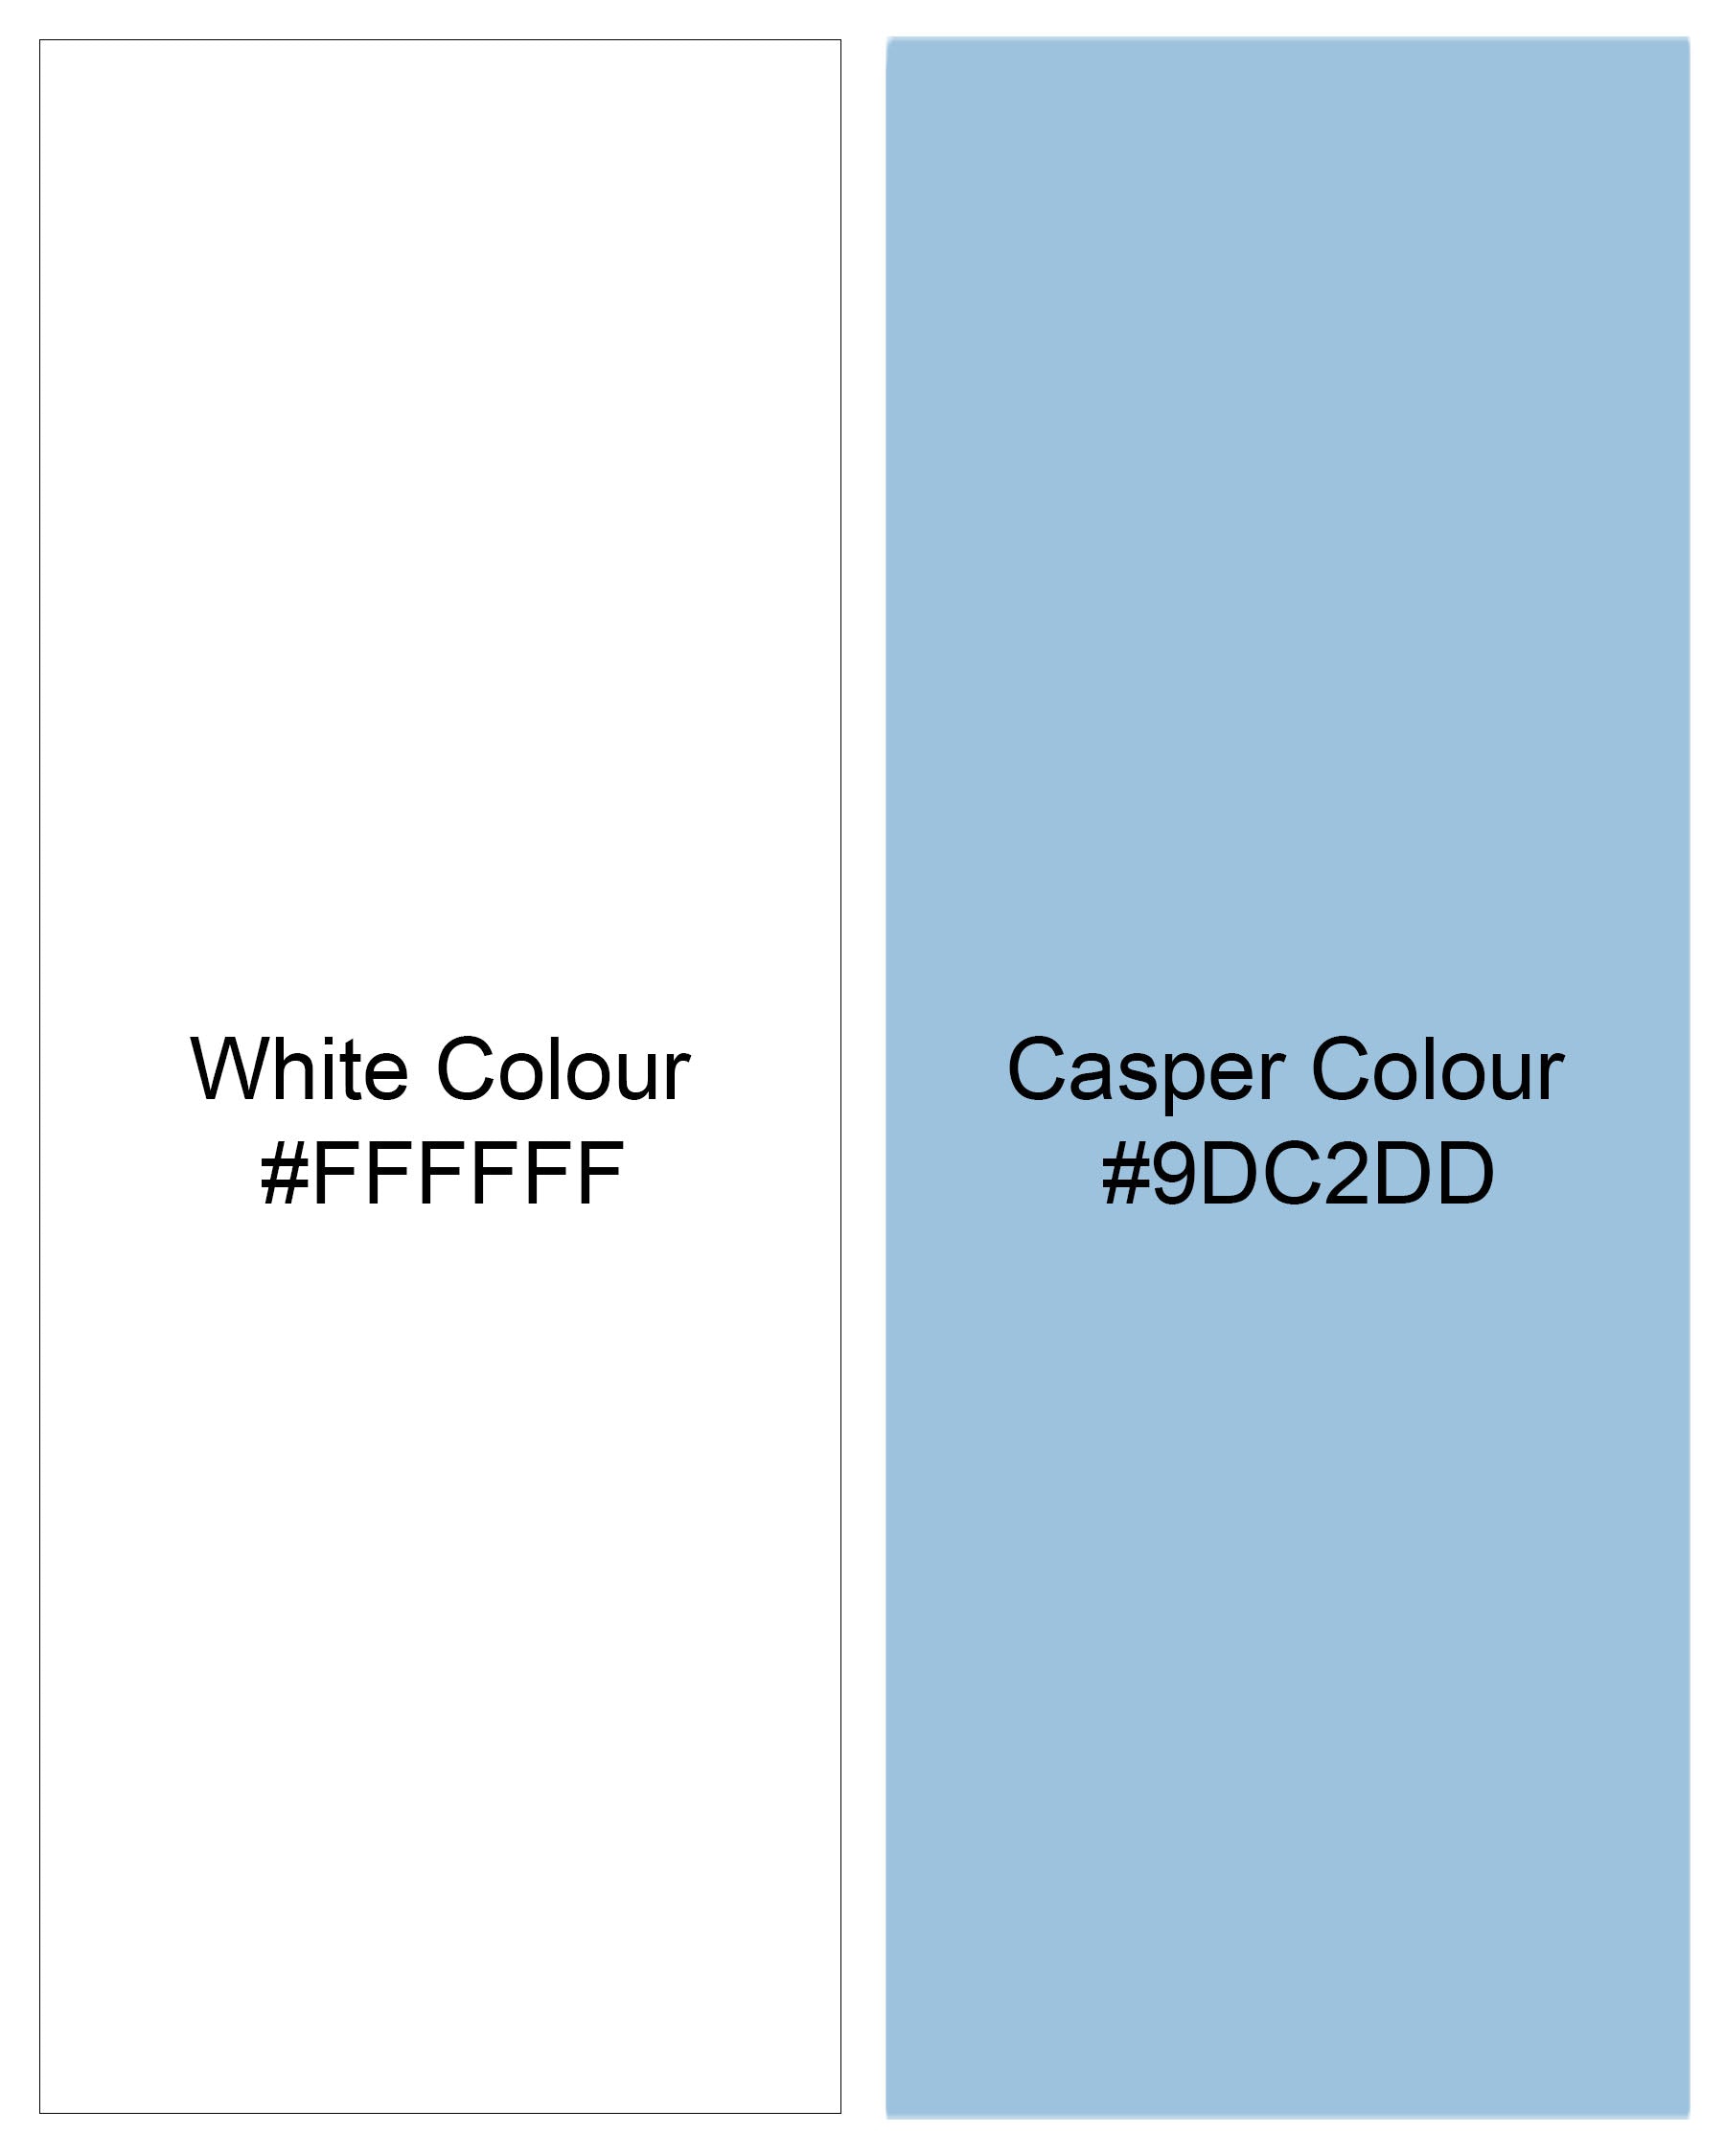 Casper Blue and White Pin Striped Premium Cotton Designer Shirt 7854-P111-38,7854-P111-38,7854-P111-39,7854-P111-39,7854-P111-40,7854-P111-40,7854-P111-42,7854-P111-42,7854-P111-44,7854-P111-44,7854-P111-46,7854-P111-46,7854-P111-48,7854-P111-48,7854-P111-50,7854-P111-50,7854-P111-52,7854-P111-52